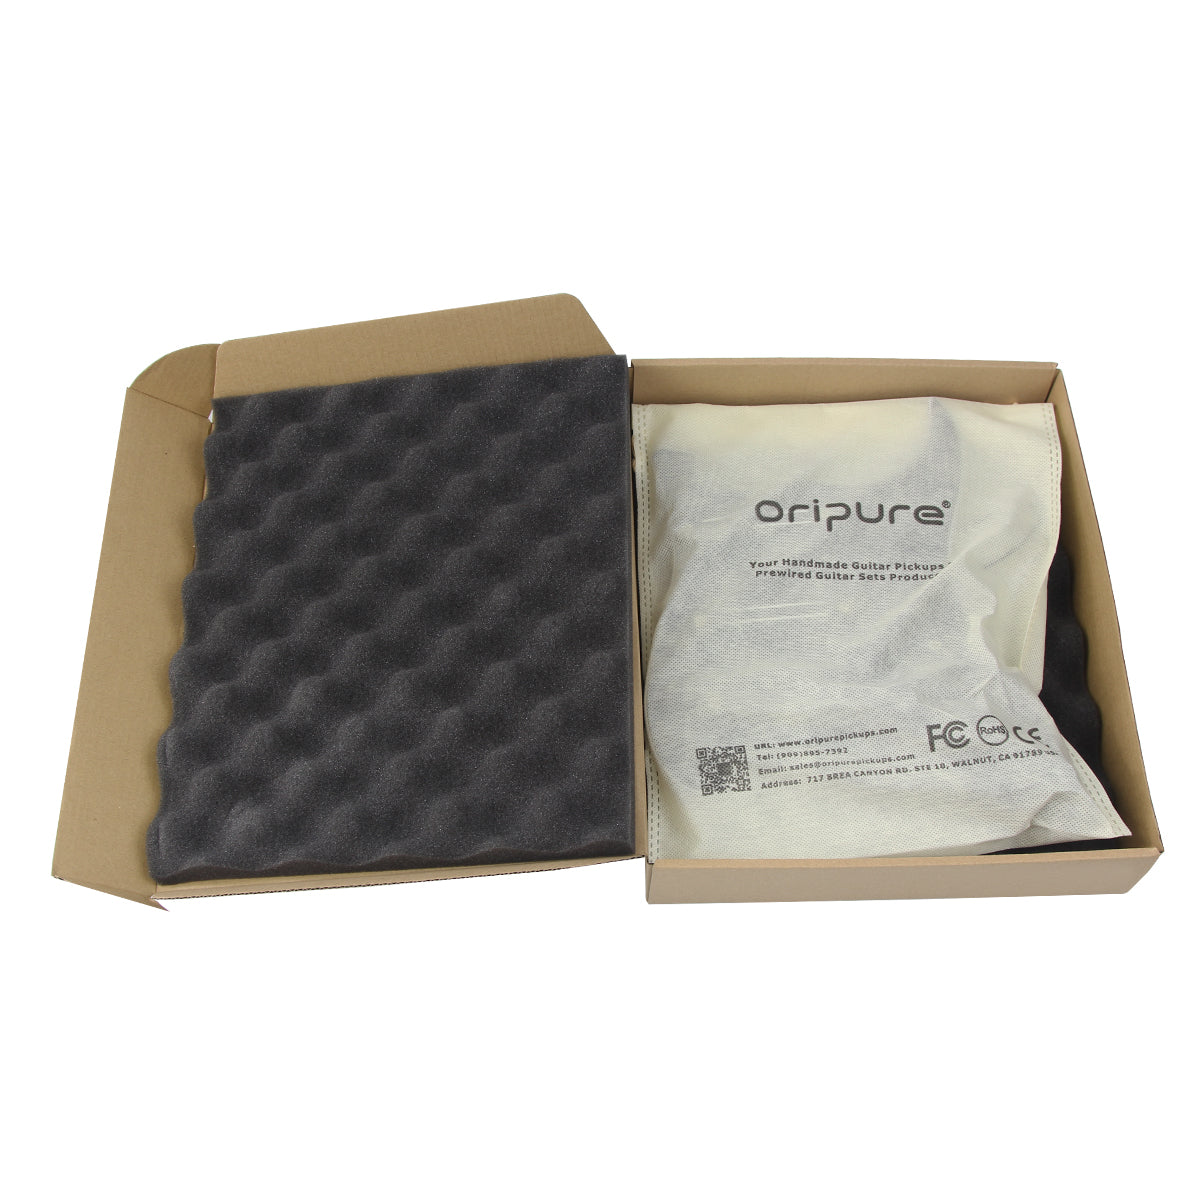 OriPure Loaded Prewired Pickguard SSS Strat con pastillas de bobina simple Alnico 5